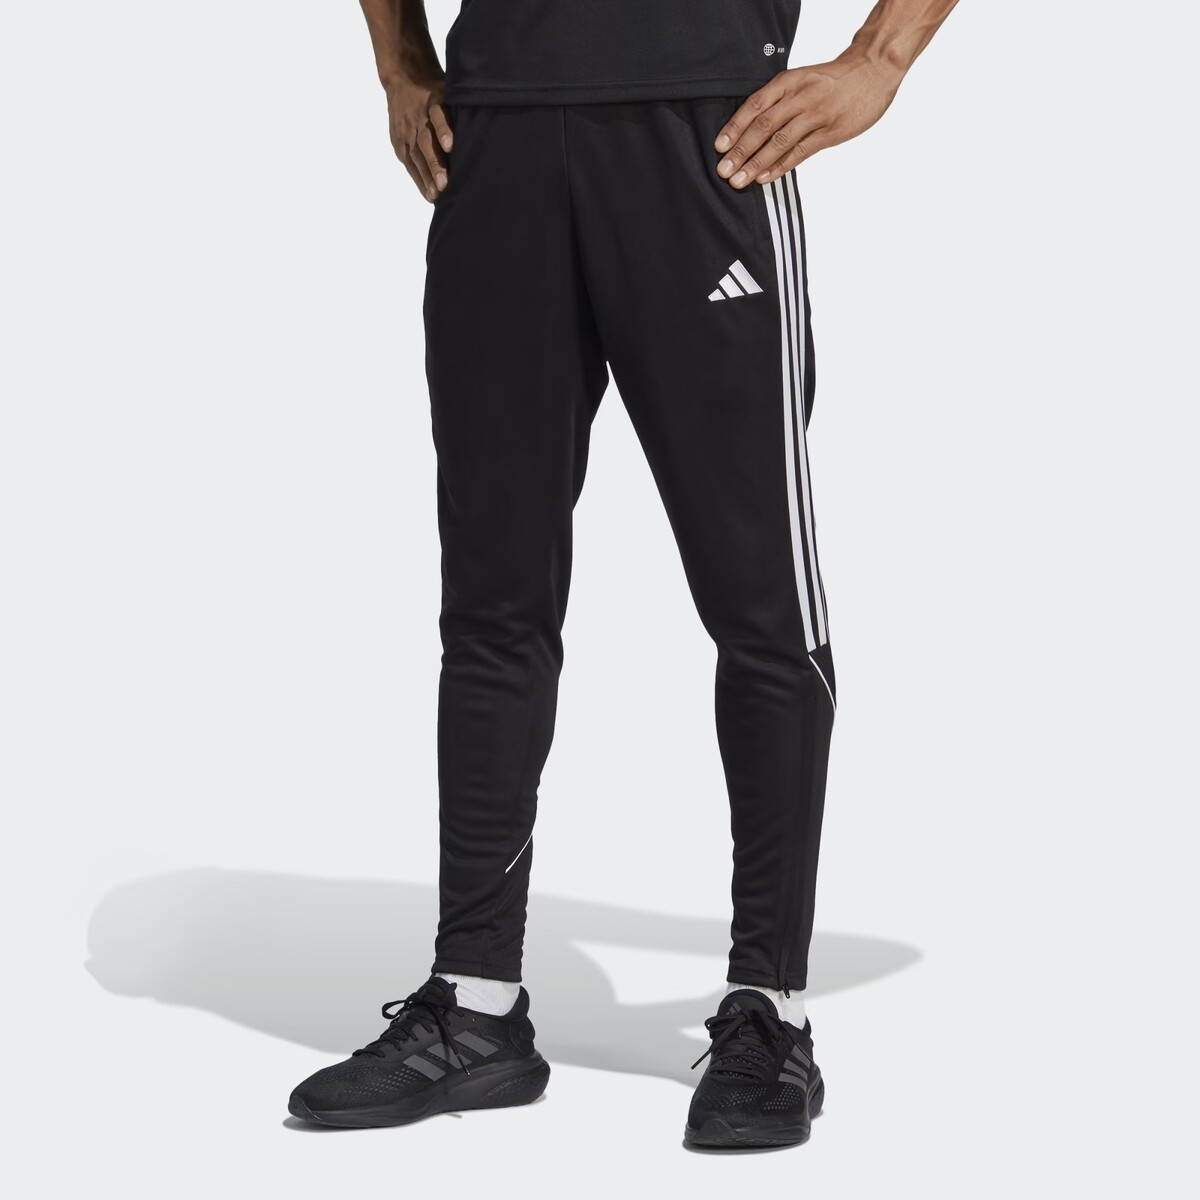 Pantalón tiro 23 color negro de Adidas